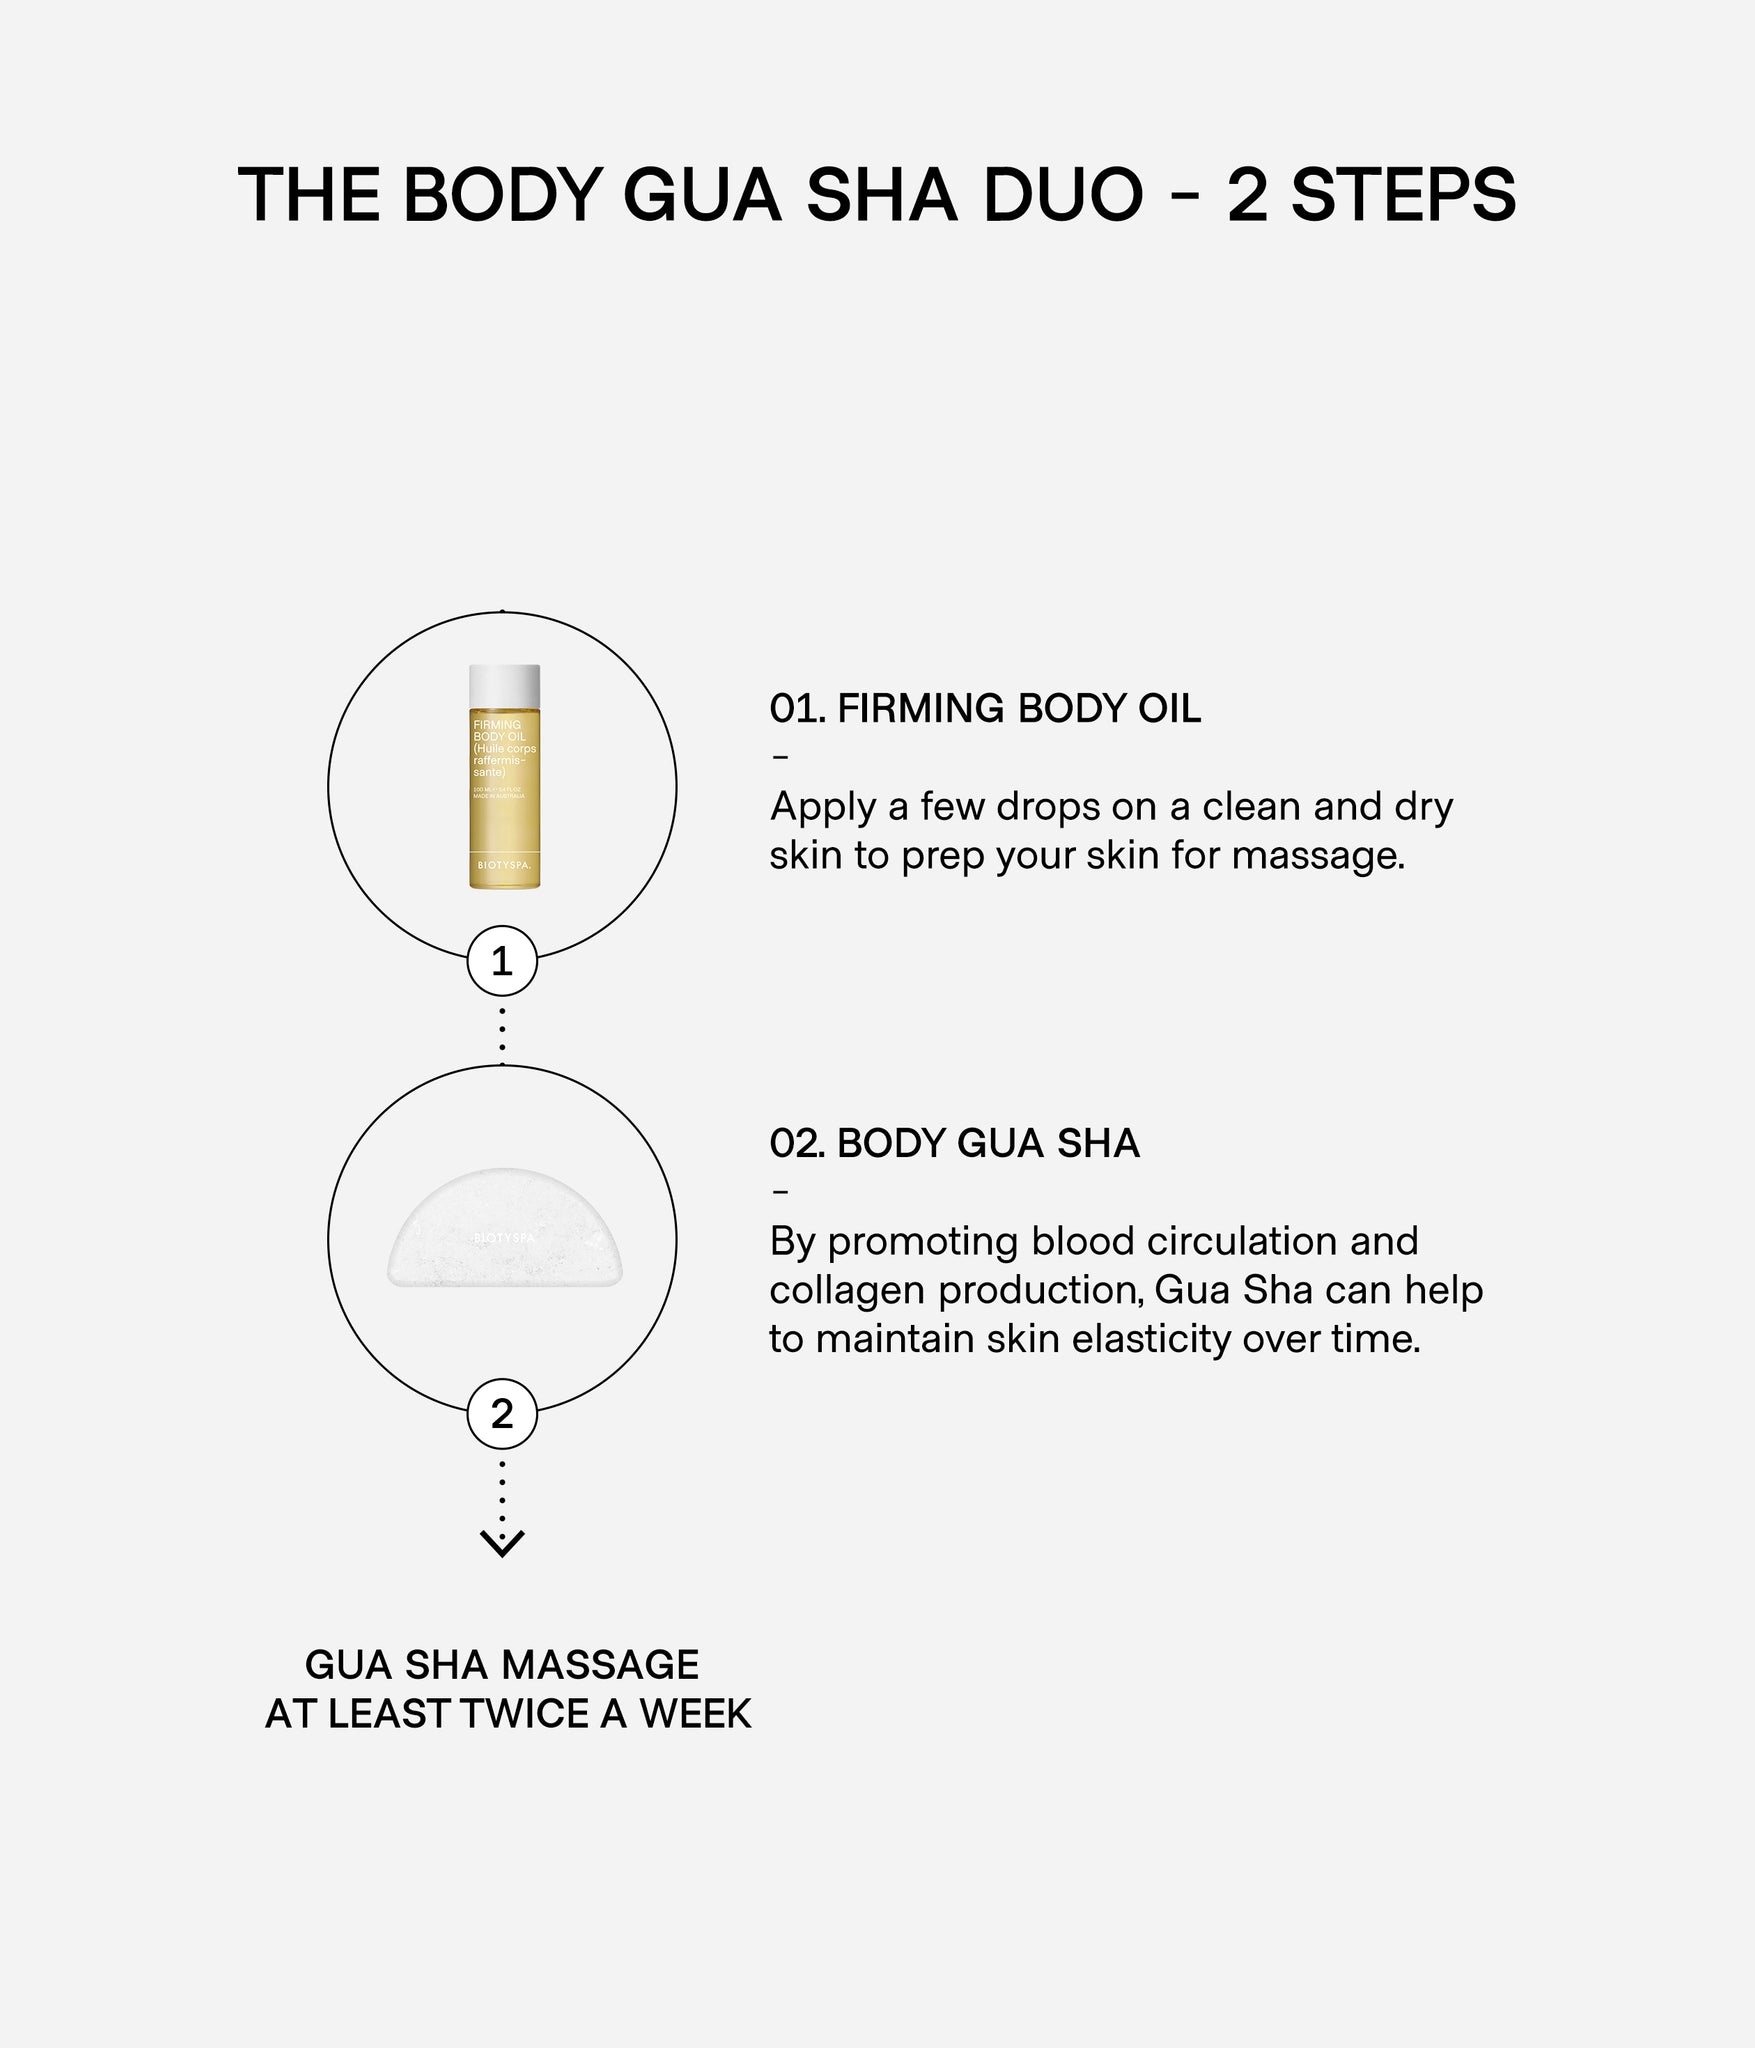 Body Gua Sha Duo